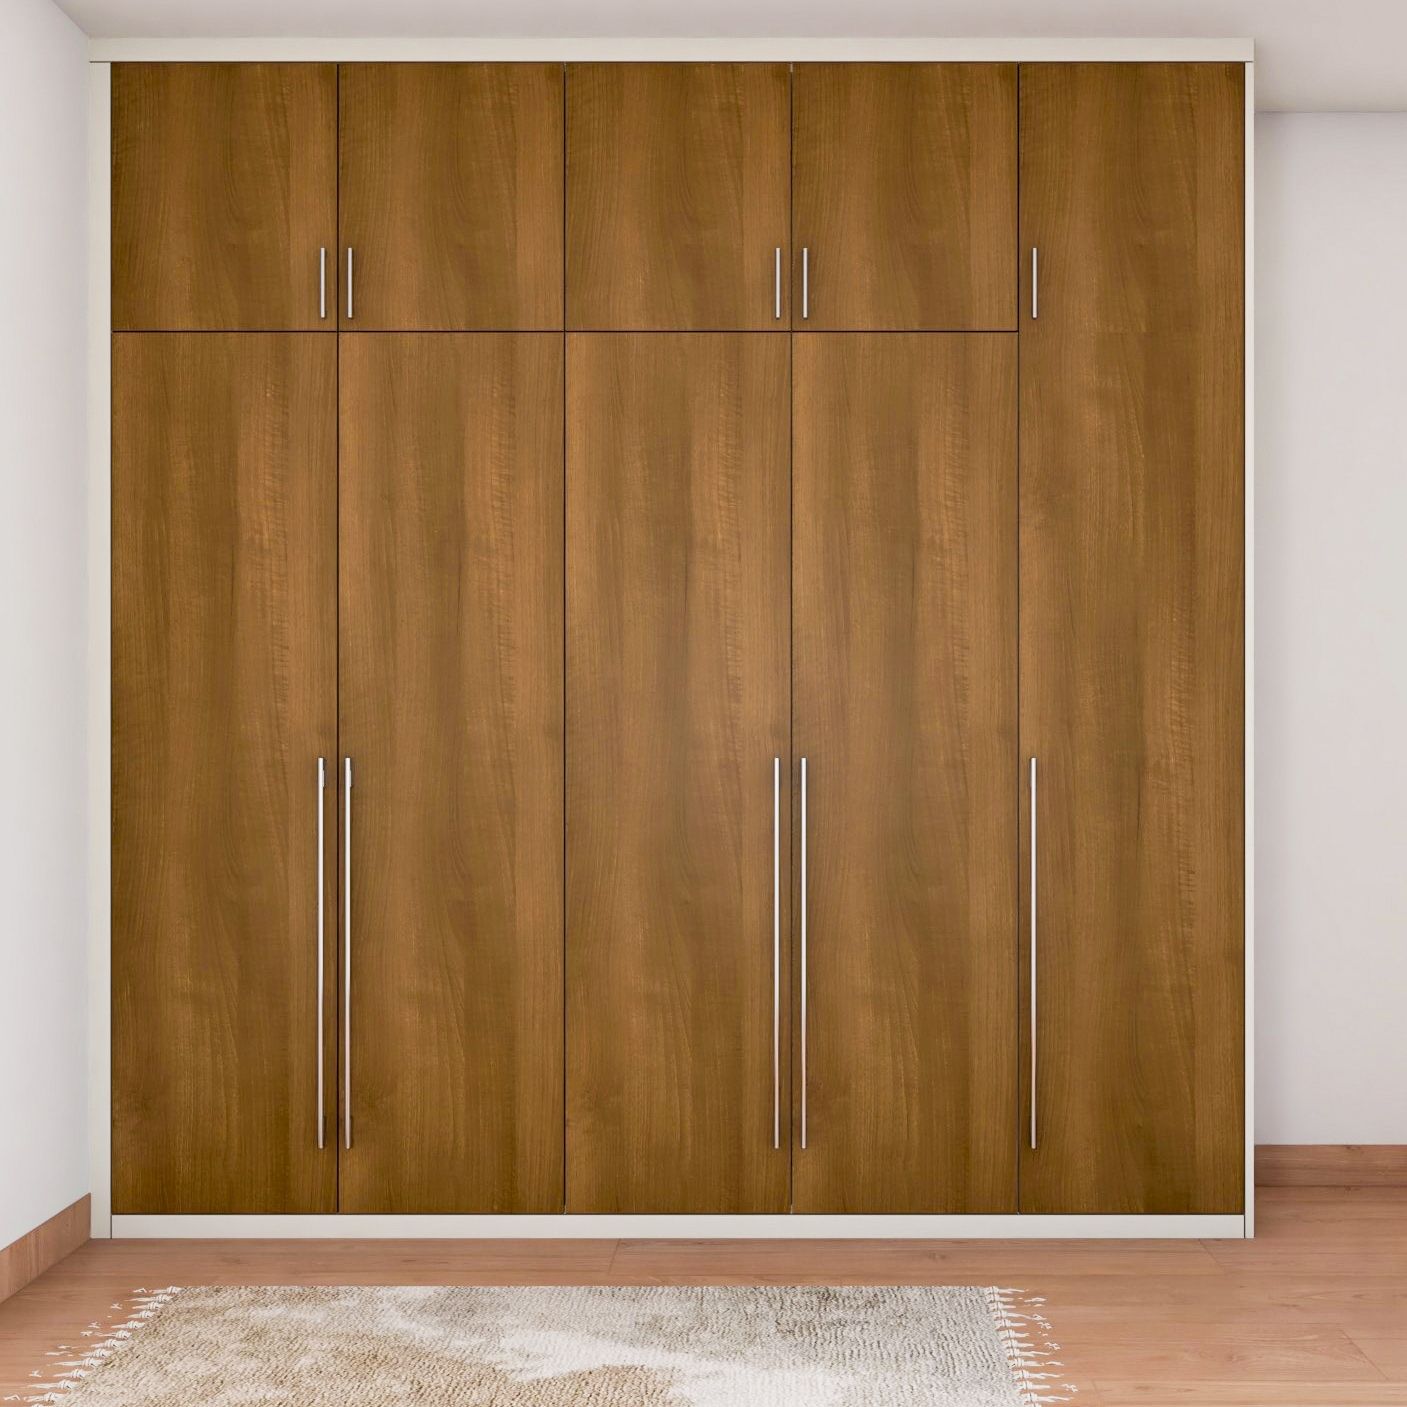 Classic 5-Door Wooden Swing Wardrobe Design With Loft Storage